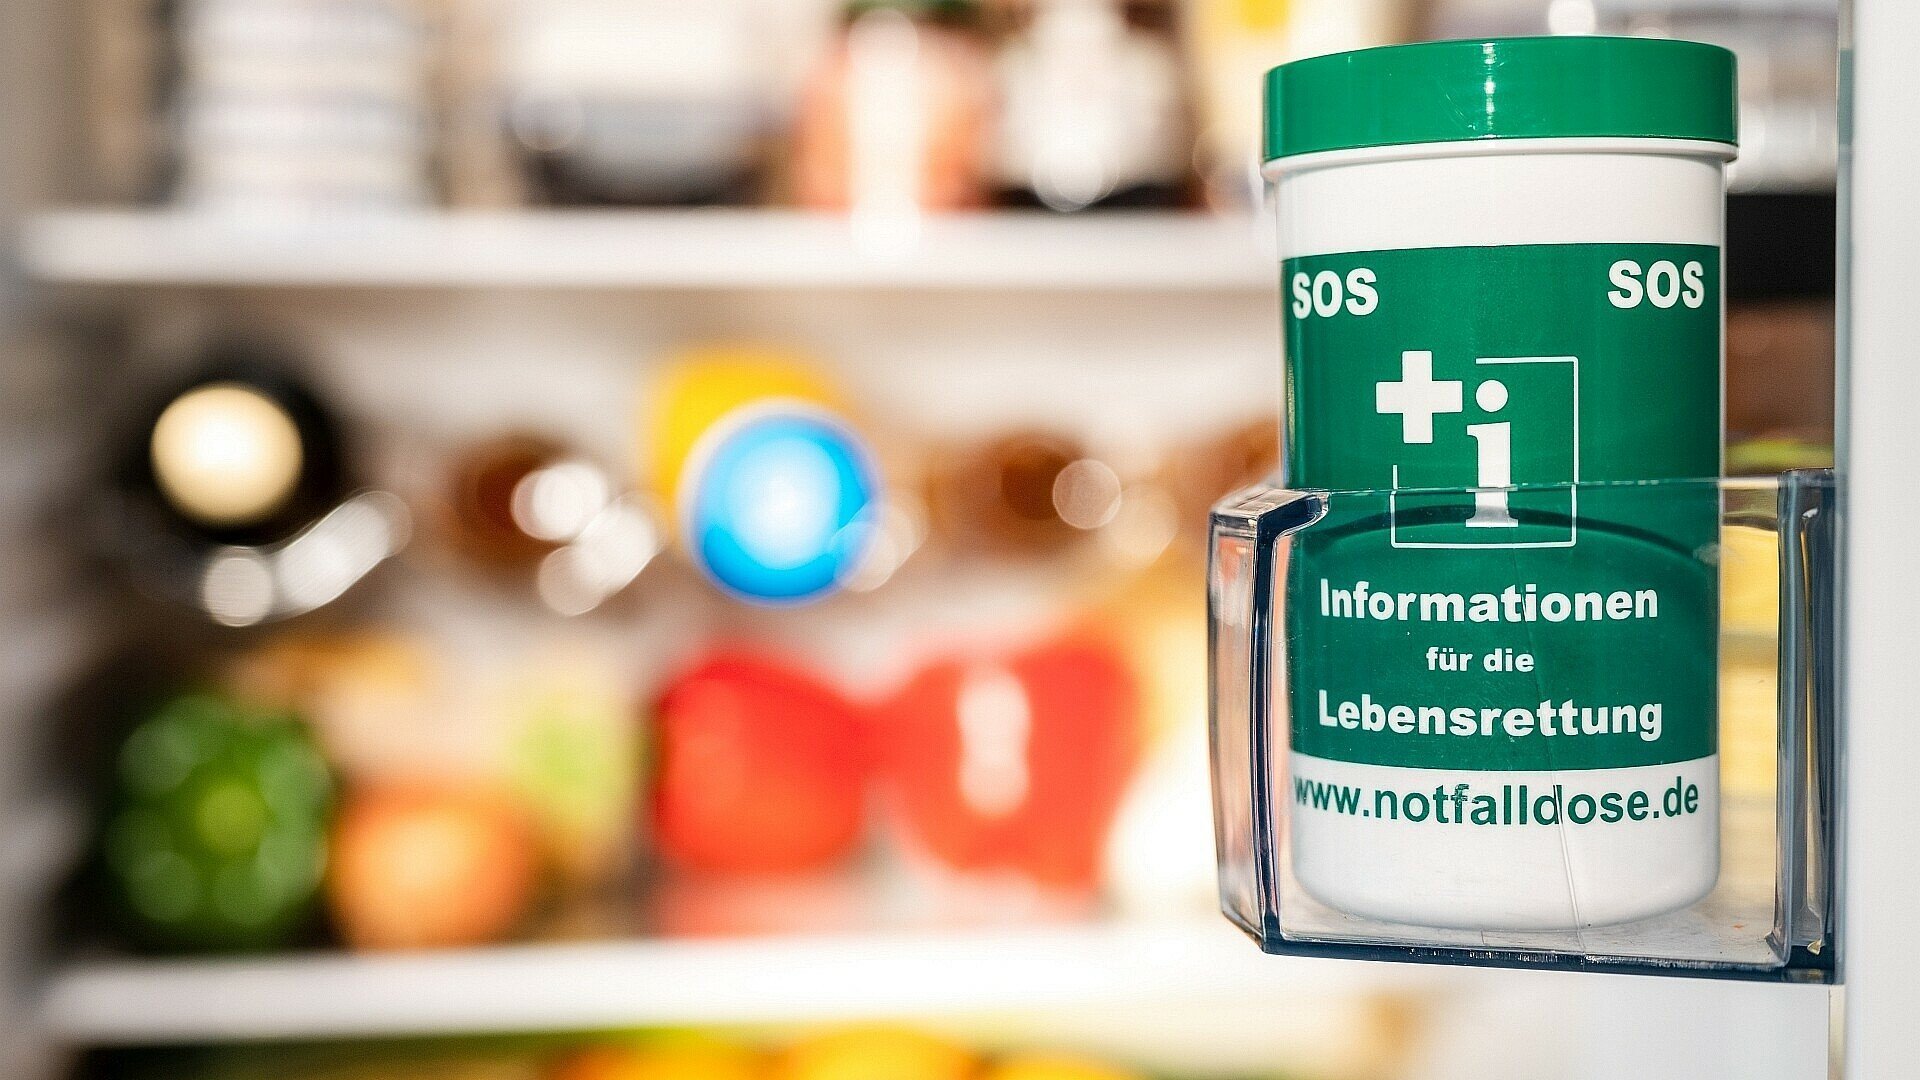 Notfalldose im Kühlschrank mit wichtigen Informationen für die Lebensrettung